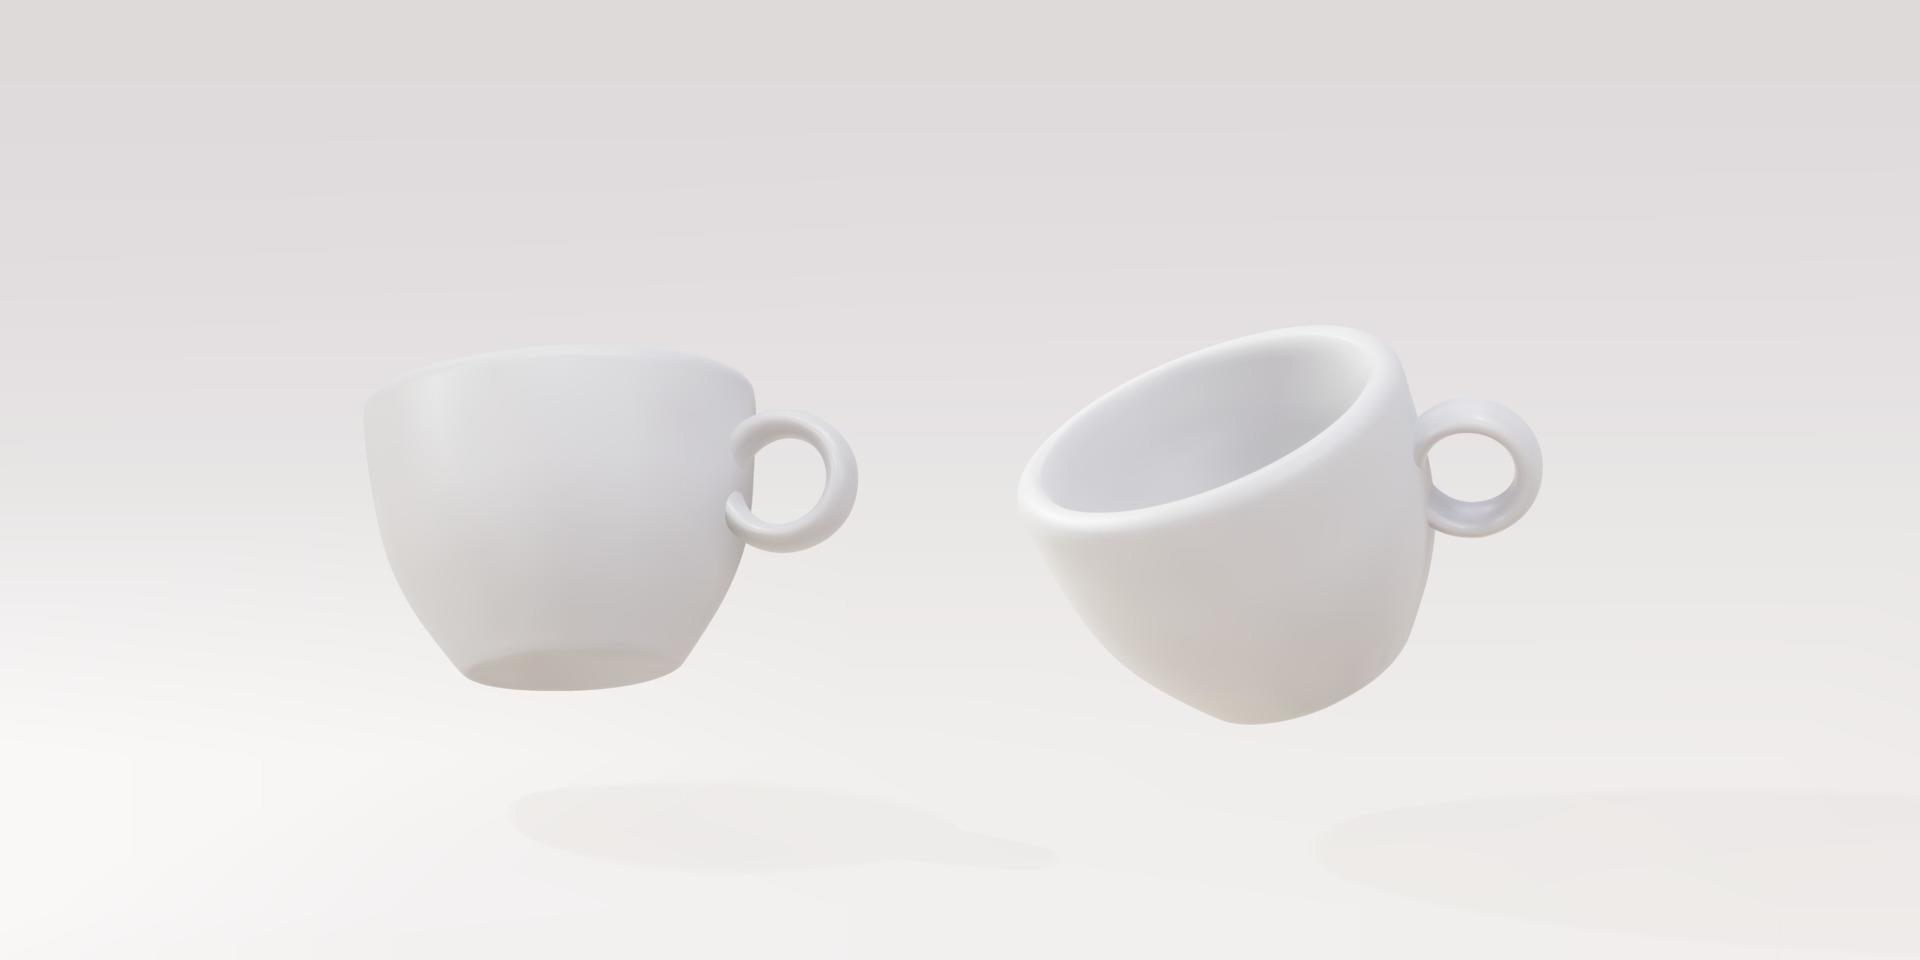 3d deux tasses blanches sur fond gris. illustration vectorielle. vecteur